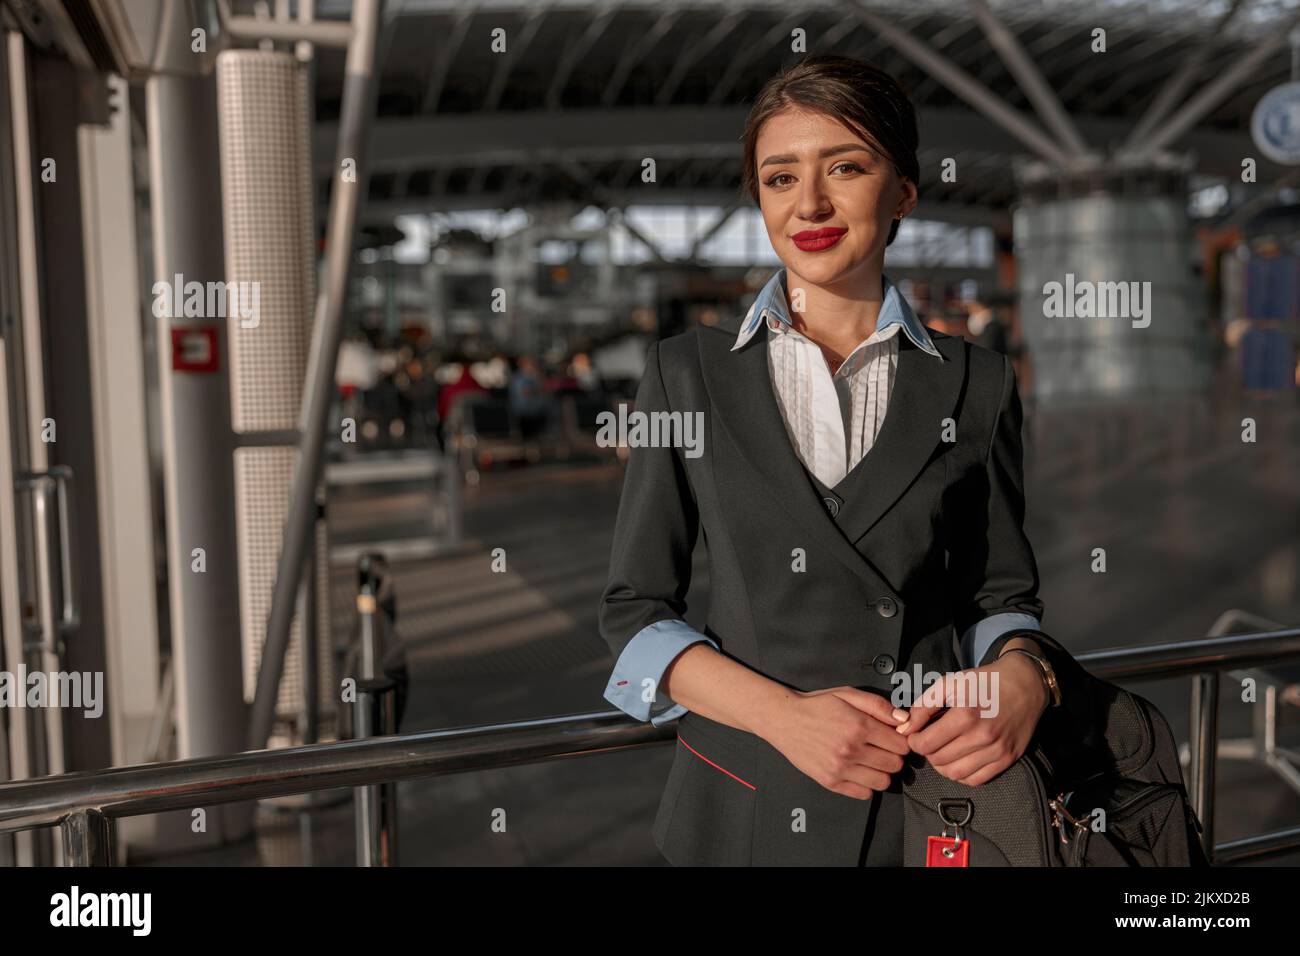 Smiling beautiful air hostess holding bag and posing at camera Stock Photo